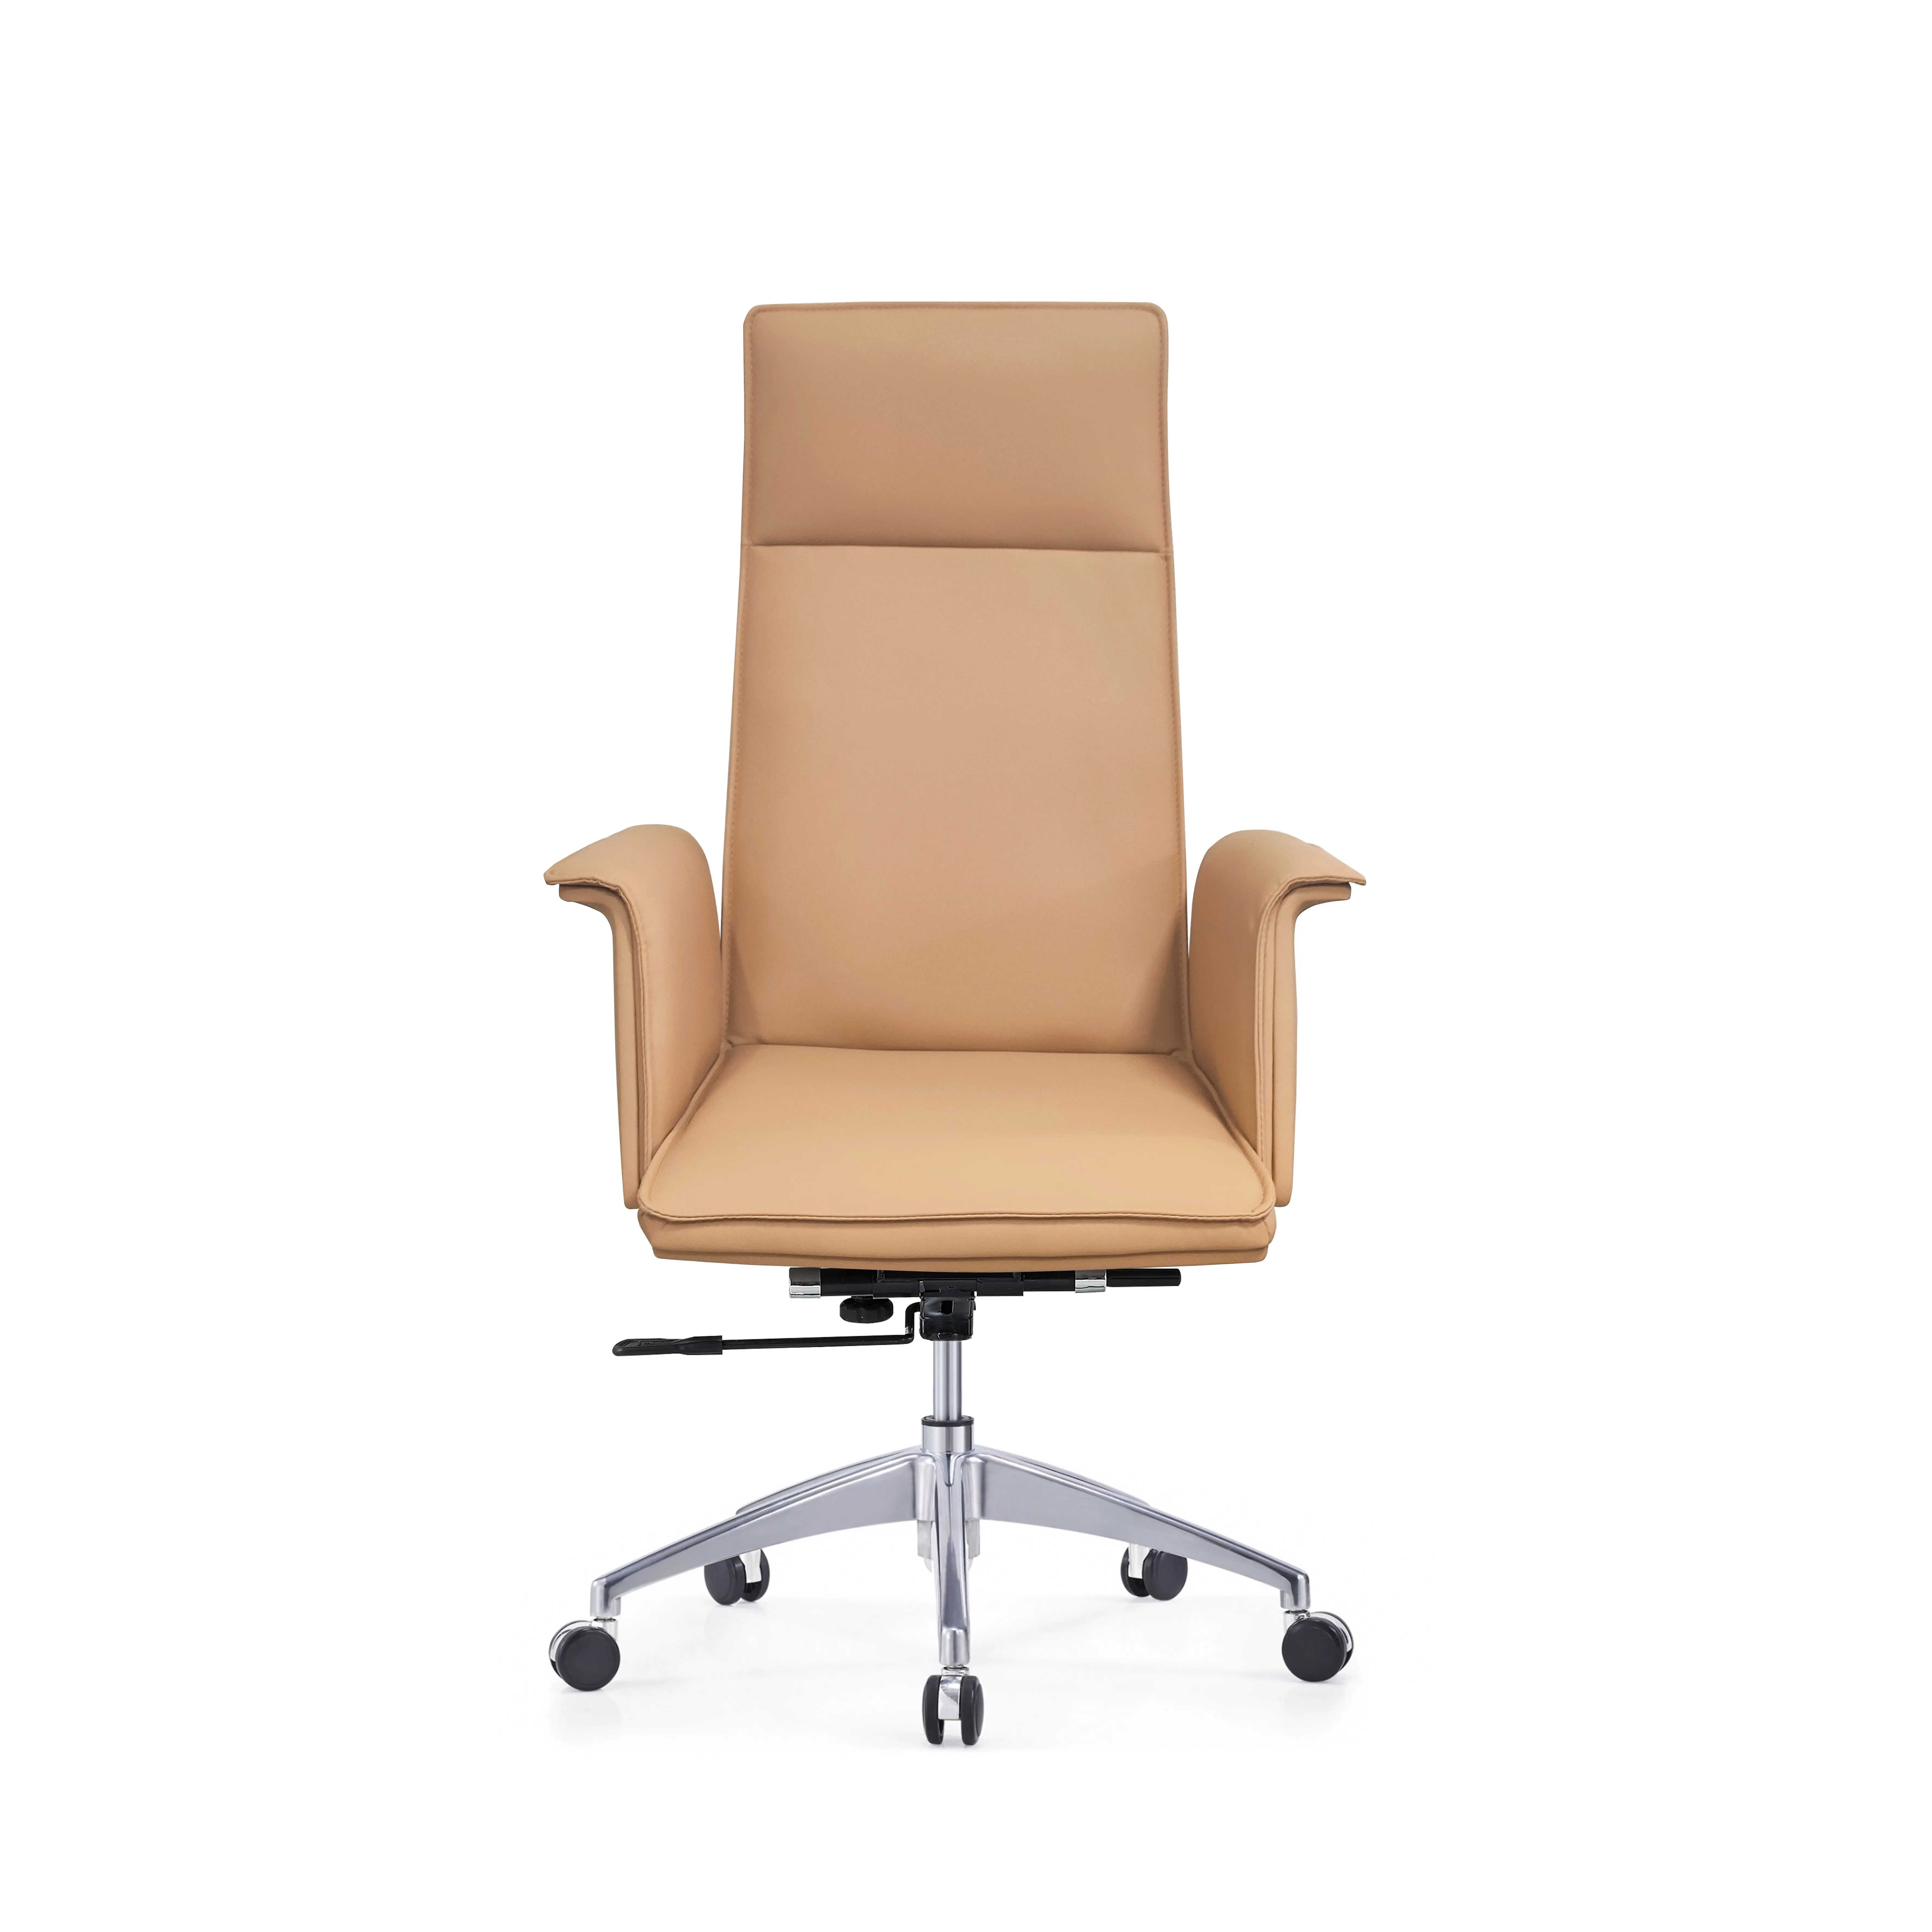 Bh003a renkli lideri sandalye ofis mobilyaları sandalyeler koltuk odası mobilya